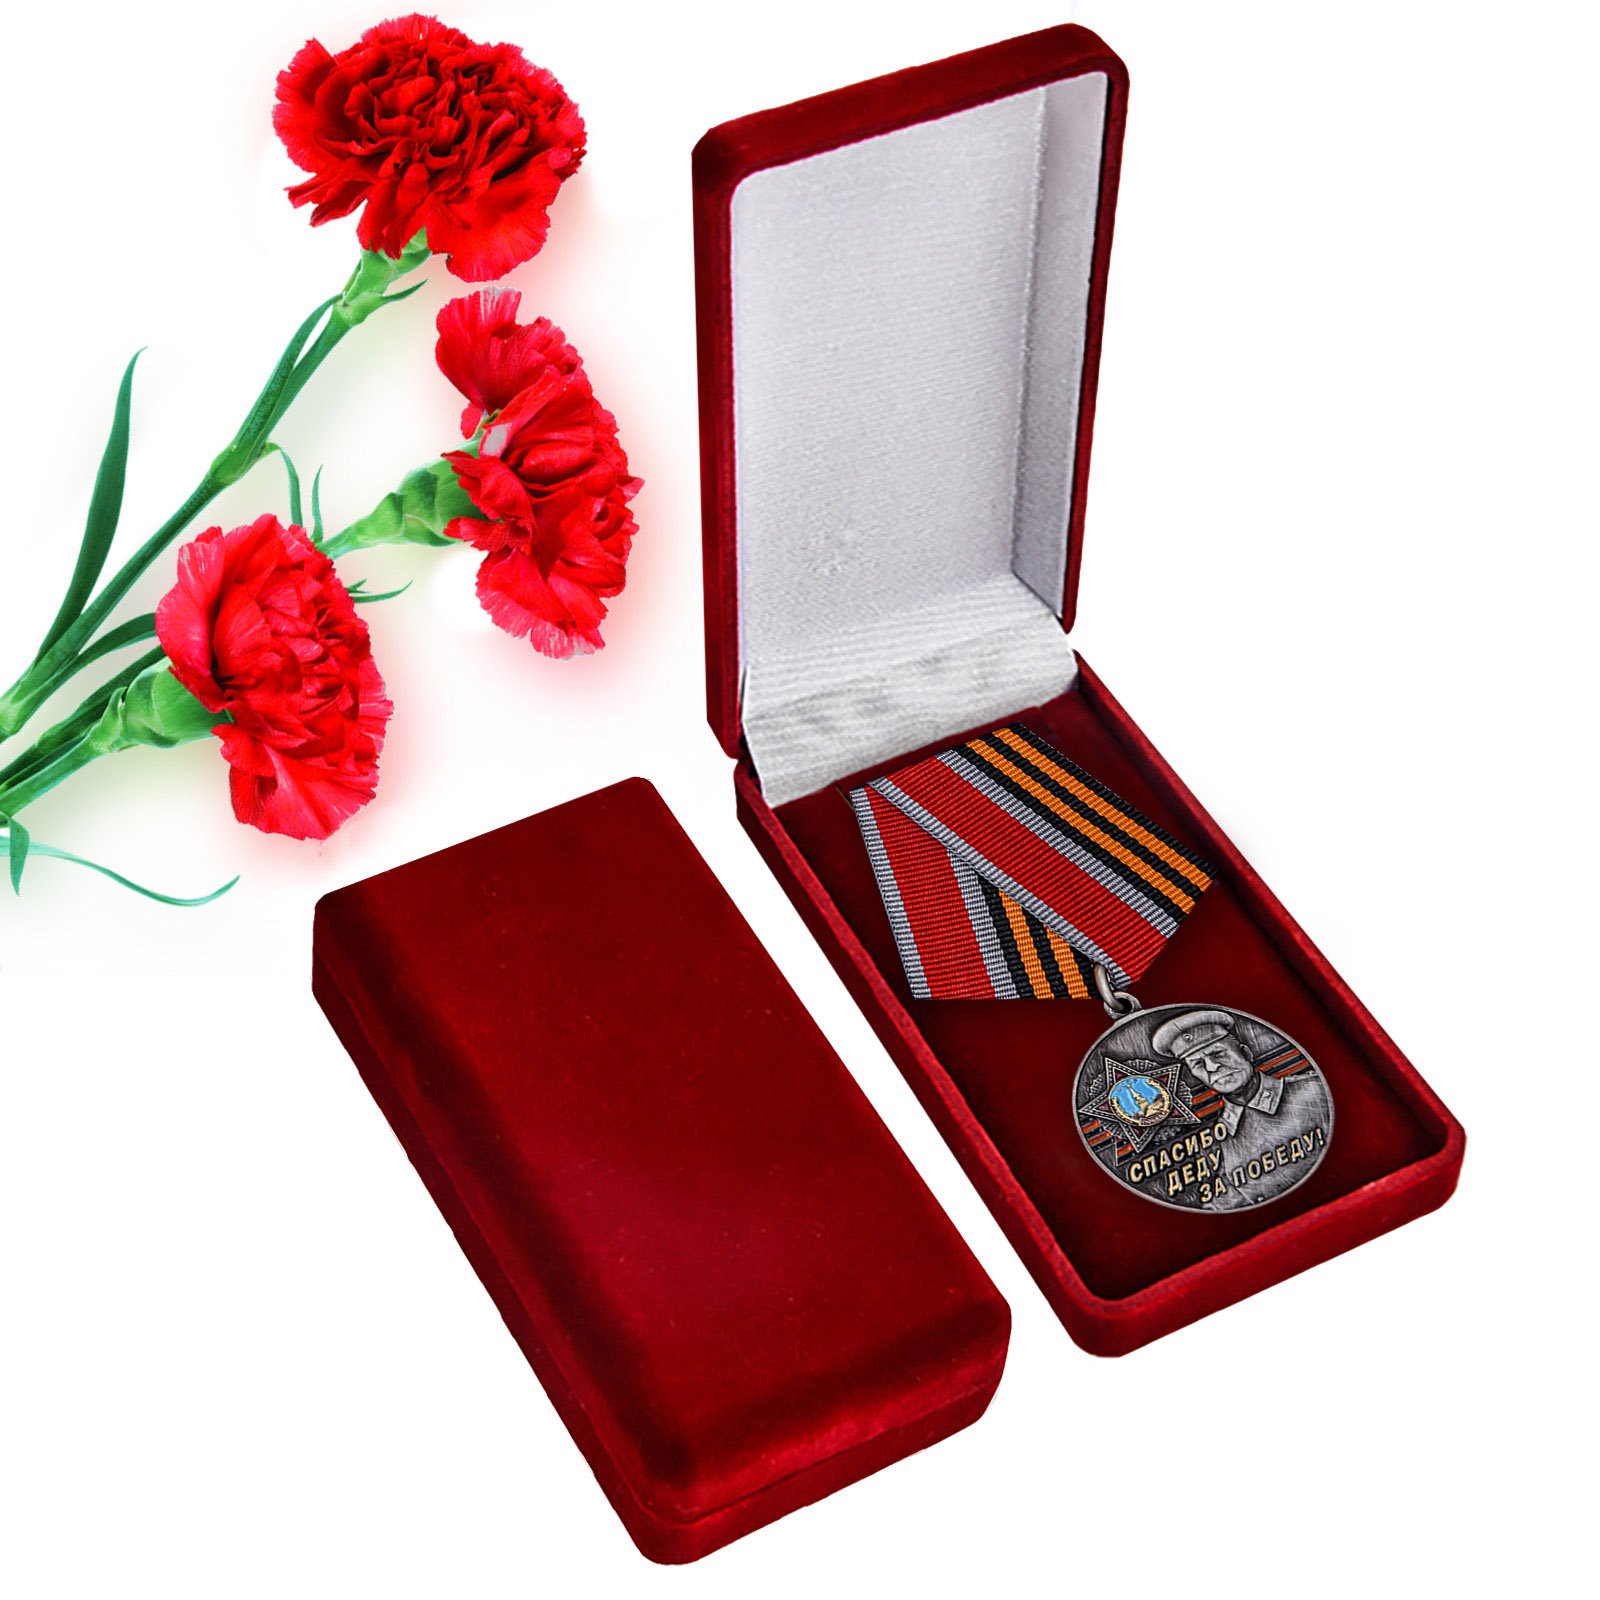 Купить памятную медаль со Сталиным Спасибо деду за Победу! с доставкой